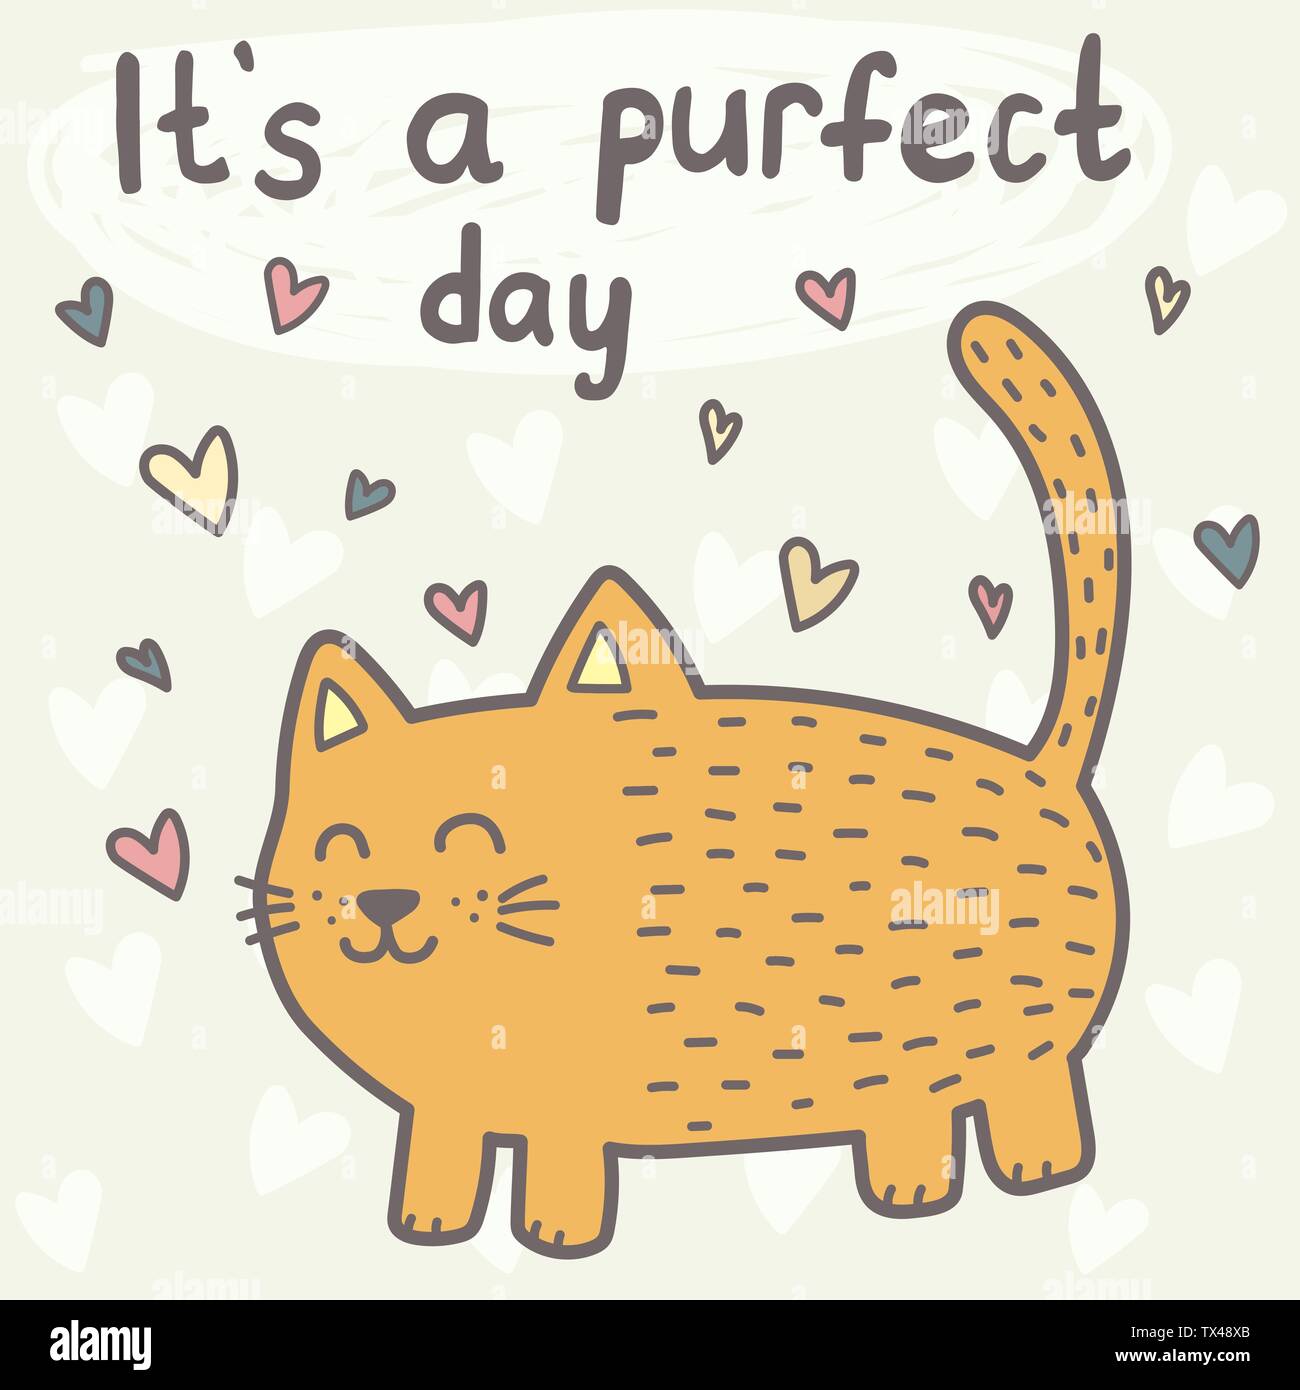 C'est un jour purfect carte avec un chat mignon. Imprimer drôle pour les enfants. Vector illustration Illustration de Vecteur